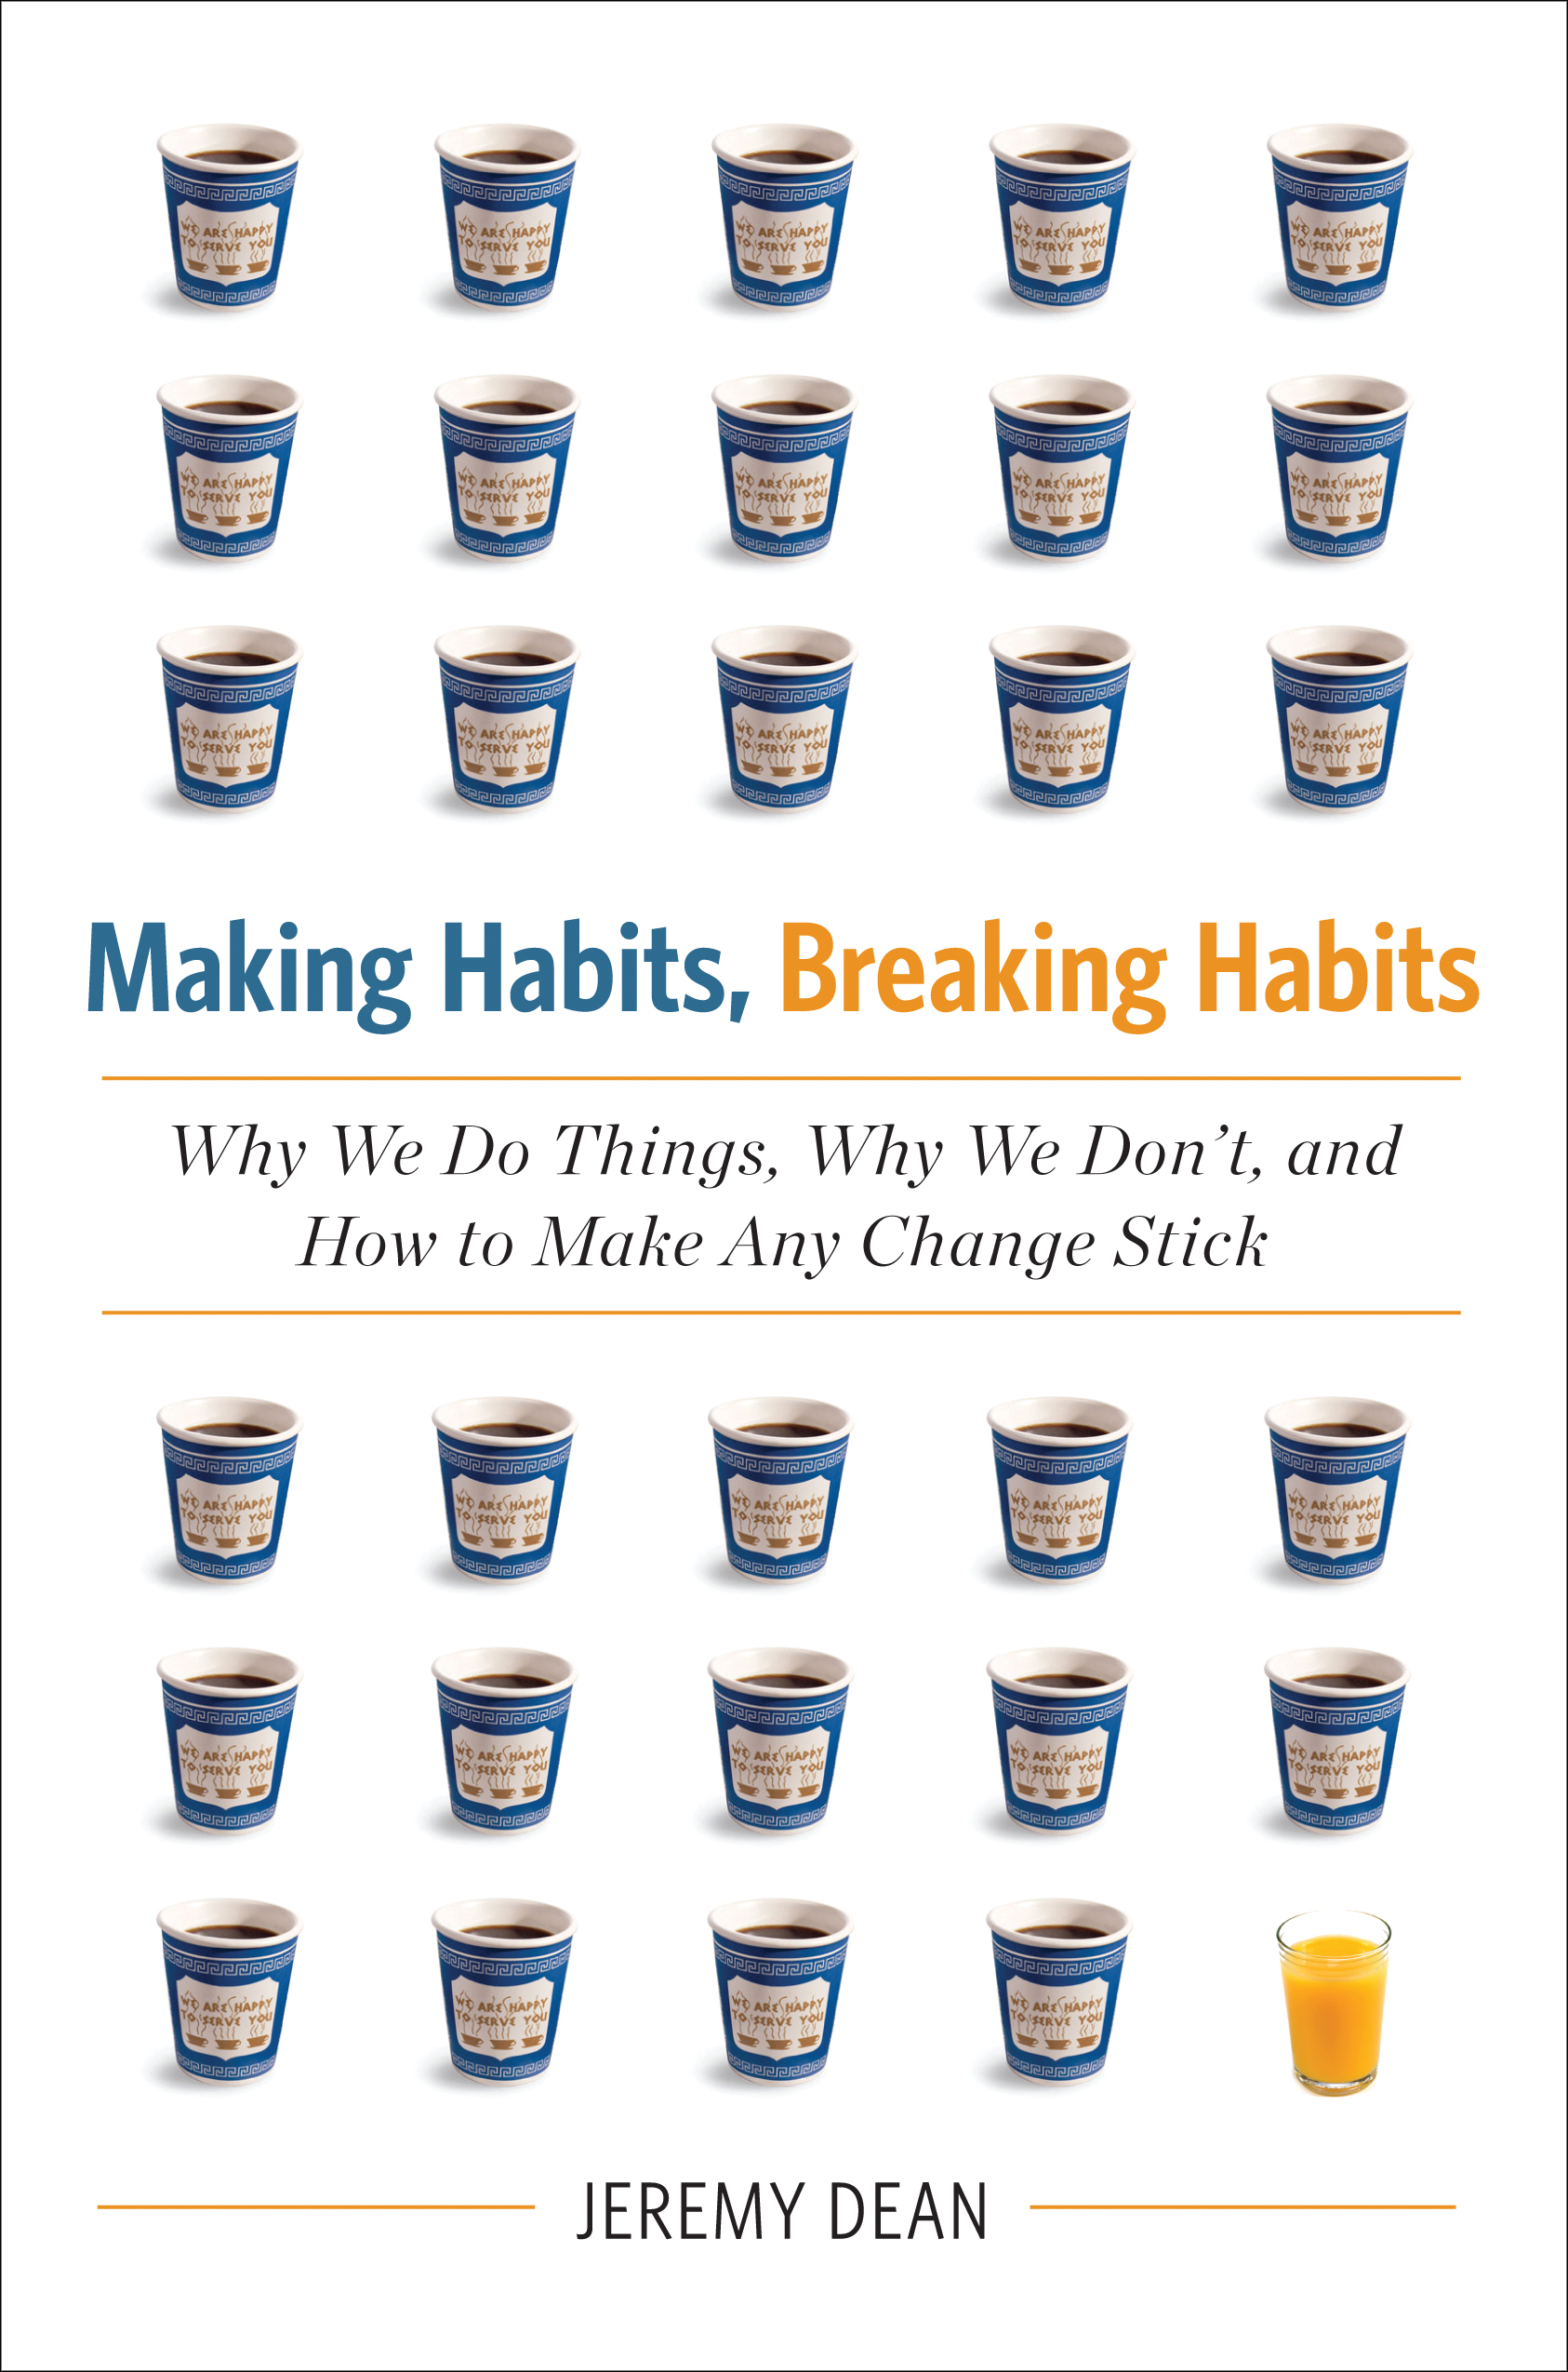 Making Habits Breaking Habits by Jeremy Dean